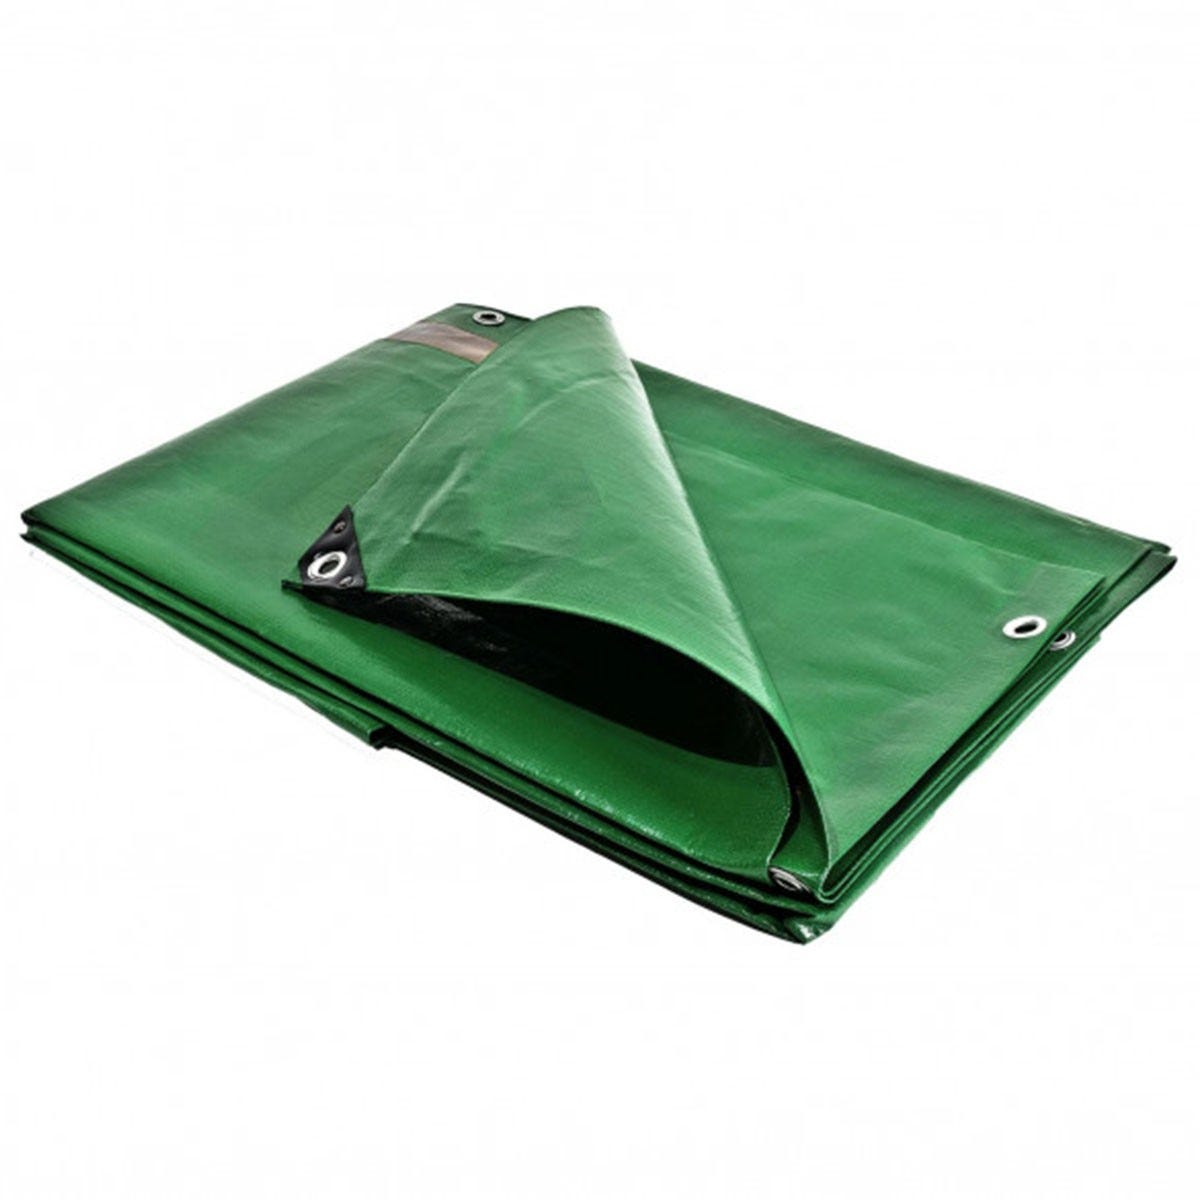 Bâche plastique 3x5 m étanche traitée anti UV verte et marron 250g/m² - bâche de protection en polyéthylène haute qualité 2